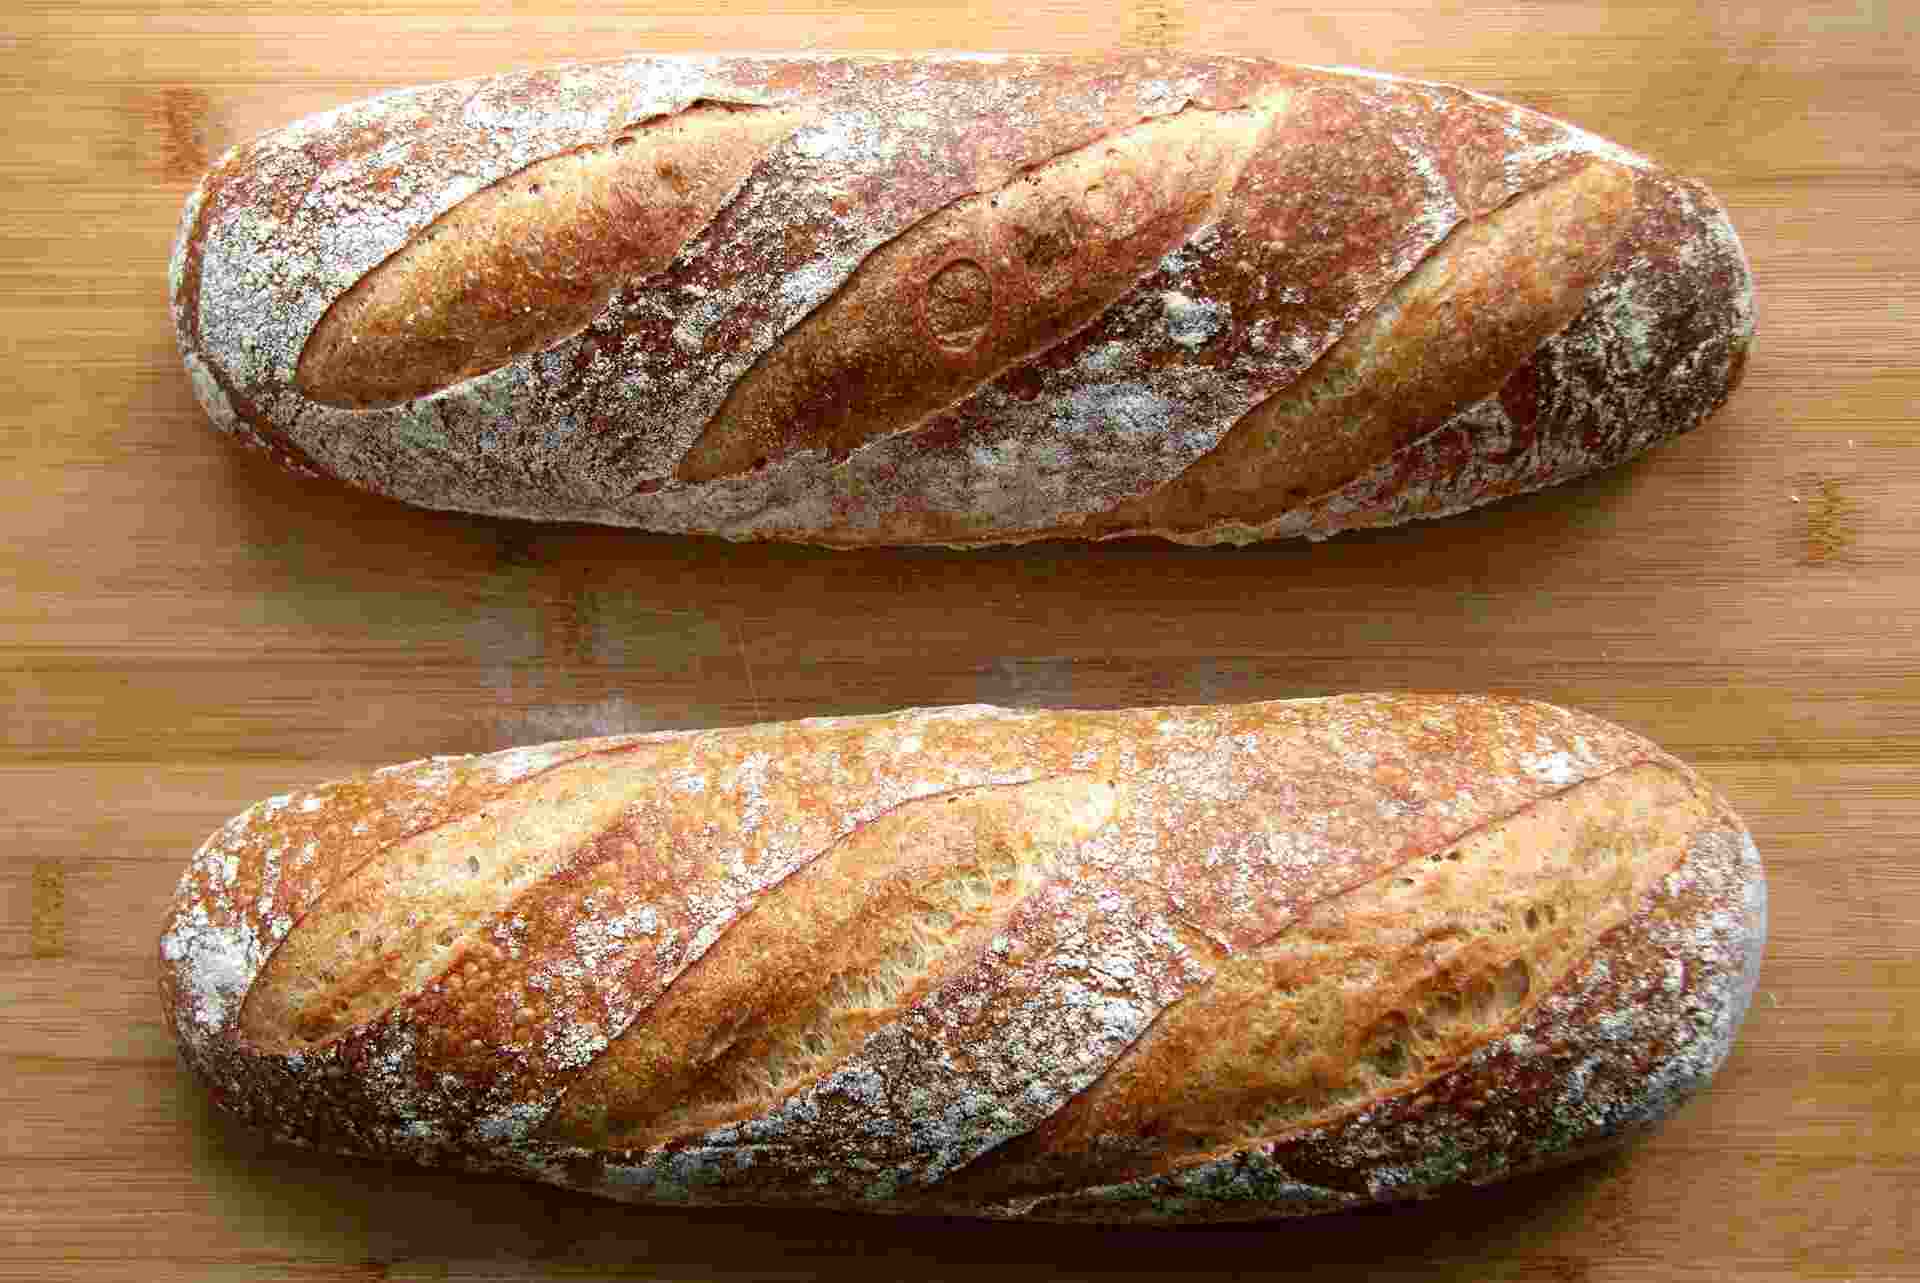 The Conversation: хлеб становится полезнее при хранении в холодильнике